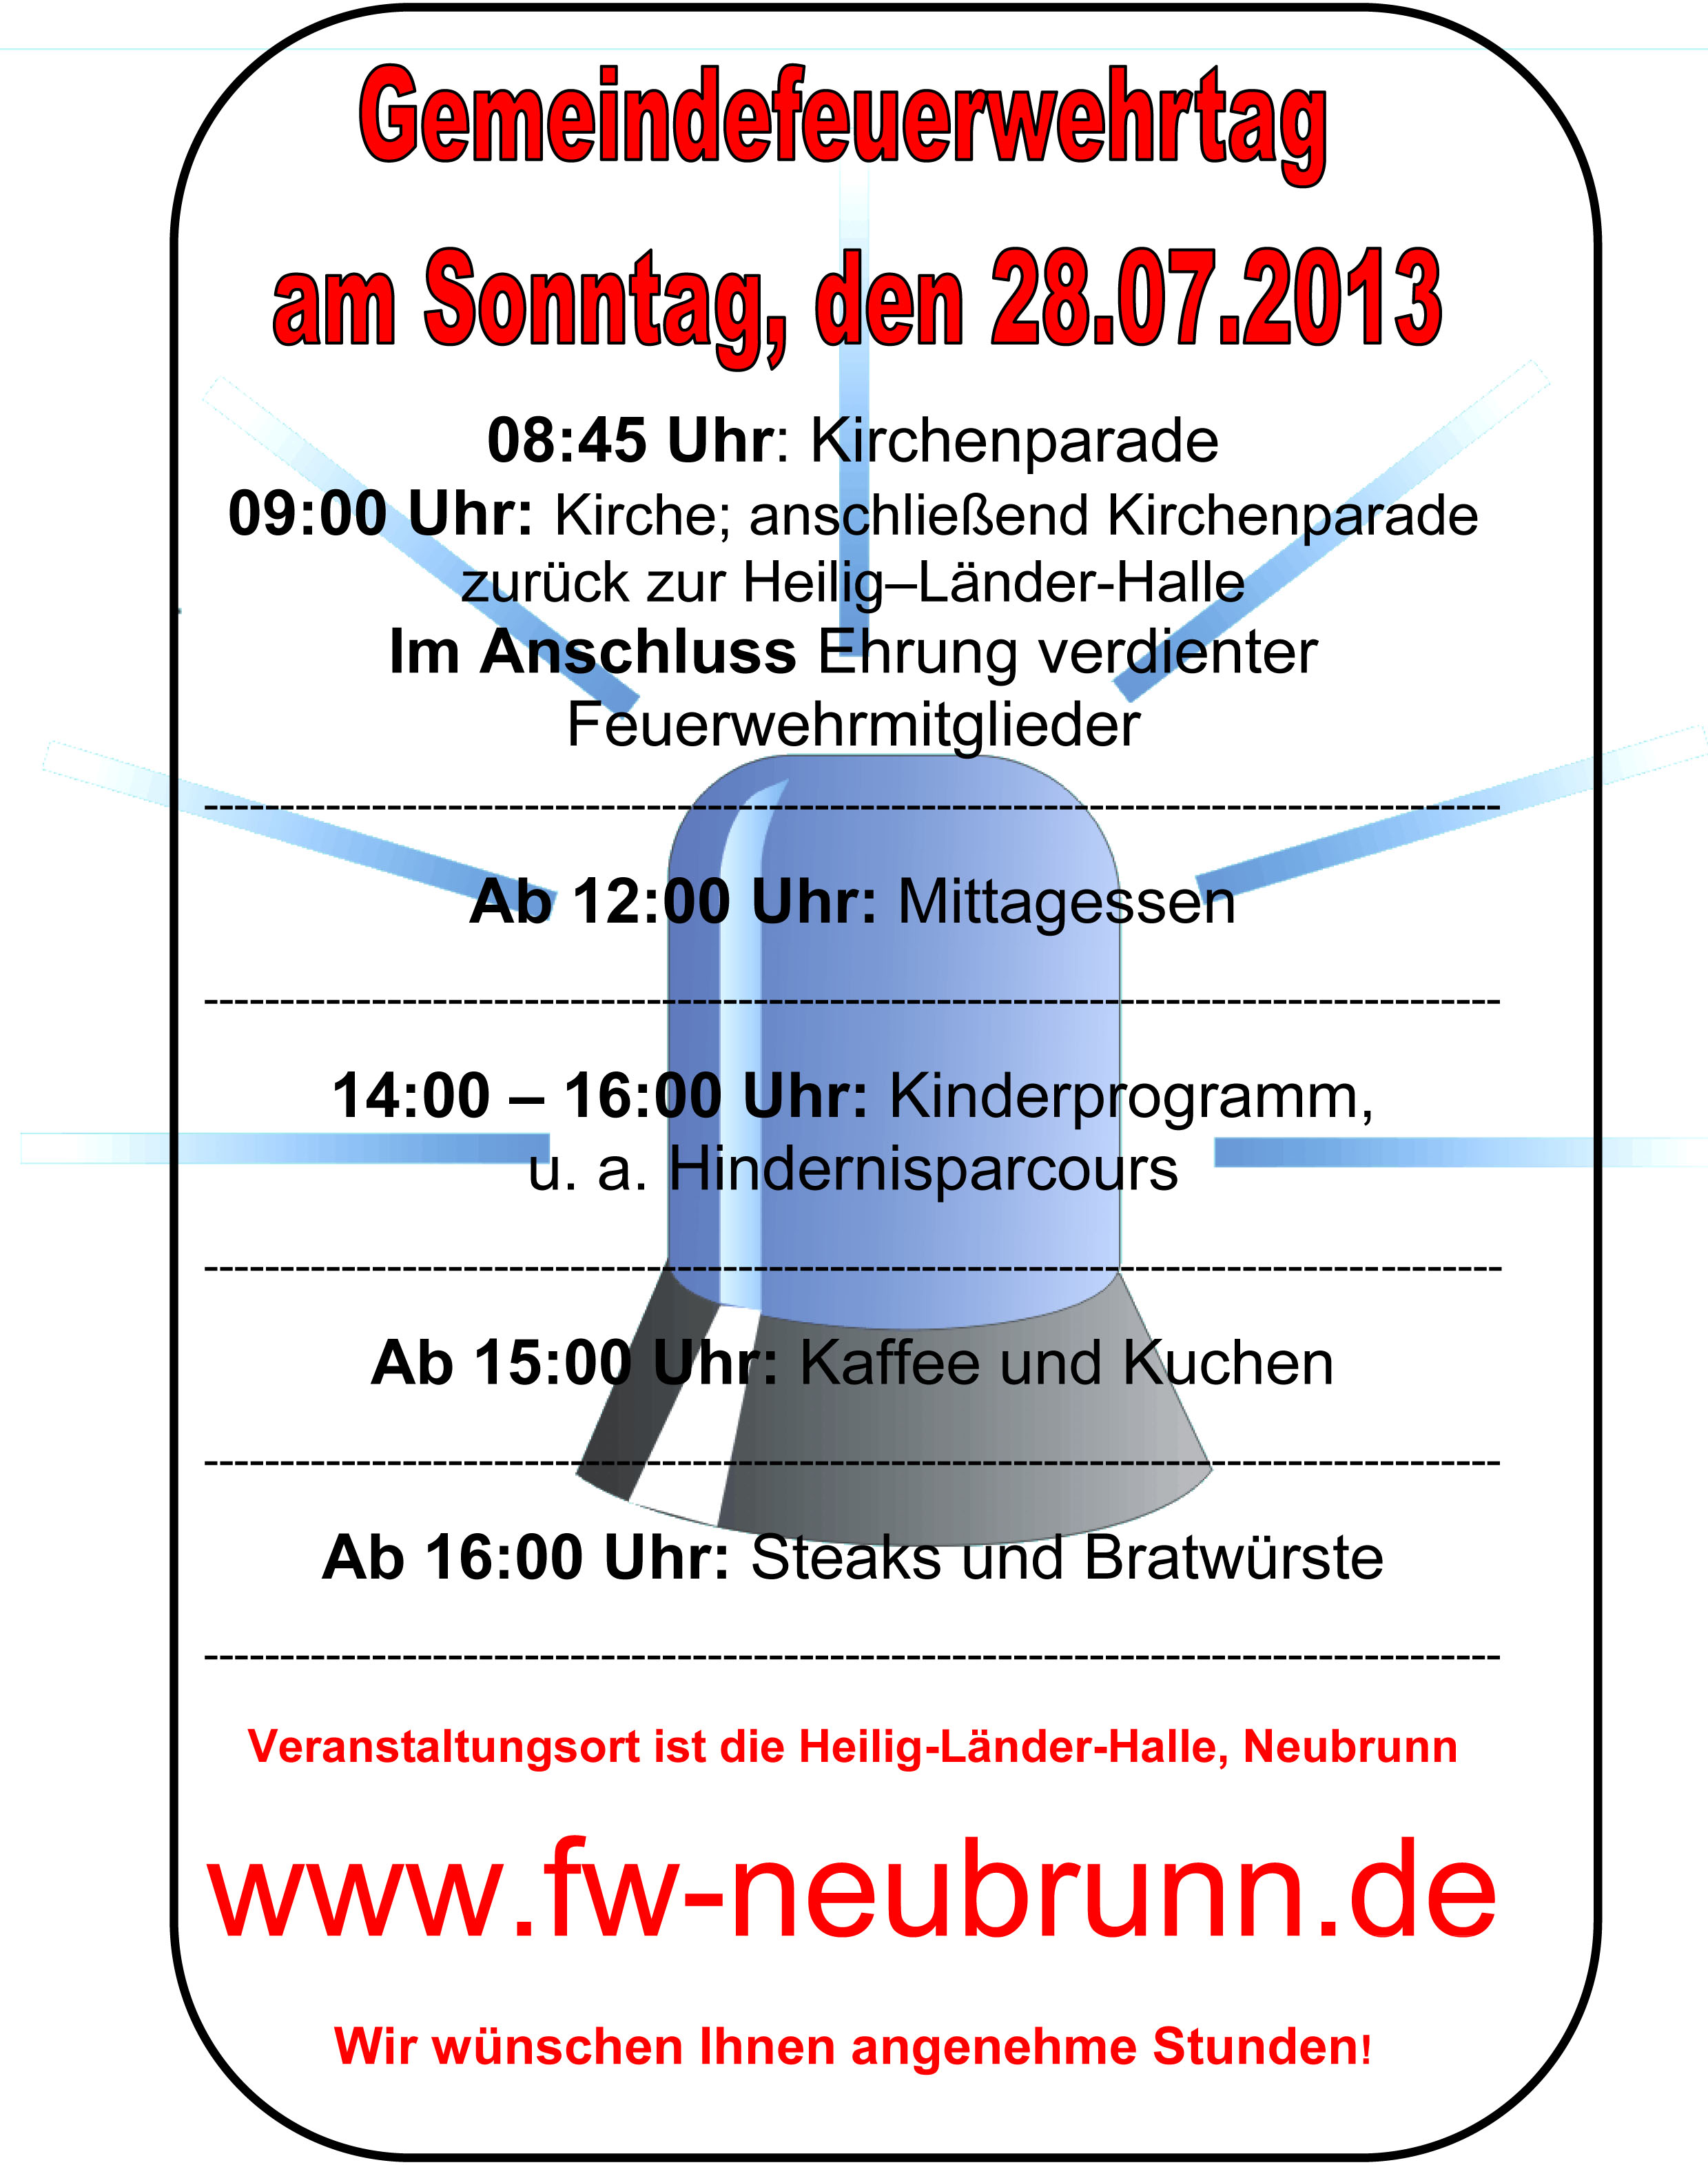 Gemeindefeuerwehrtag Plakat 2013